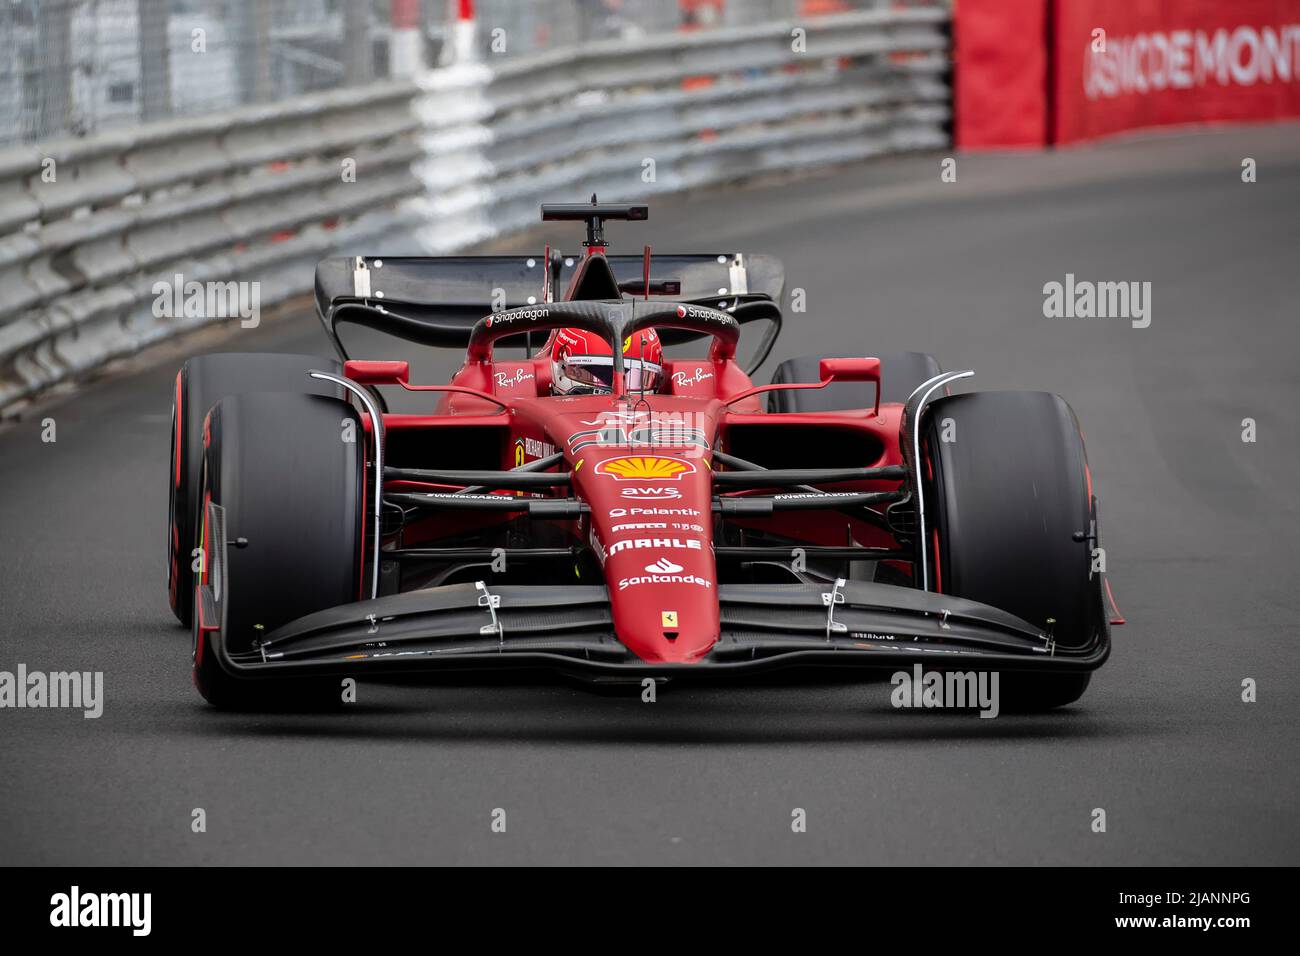 The Formula 1 Grand Prix in Montecarlo MonacoGP F1 Stock Photo